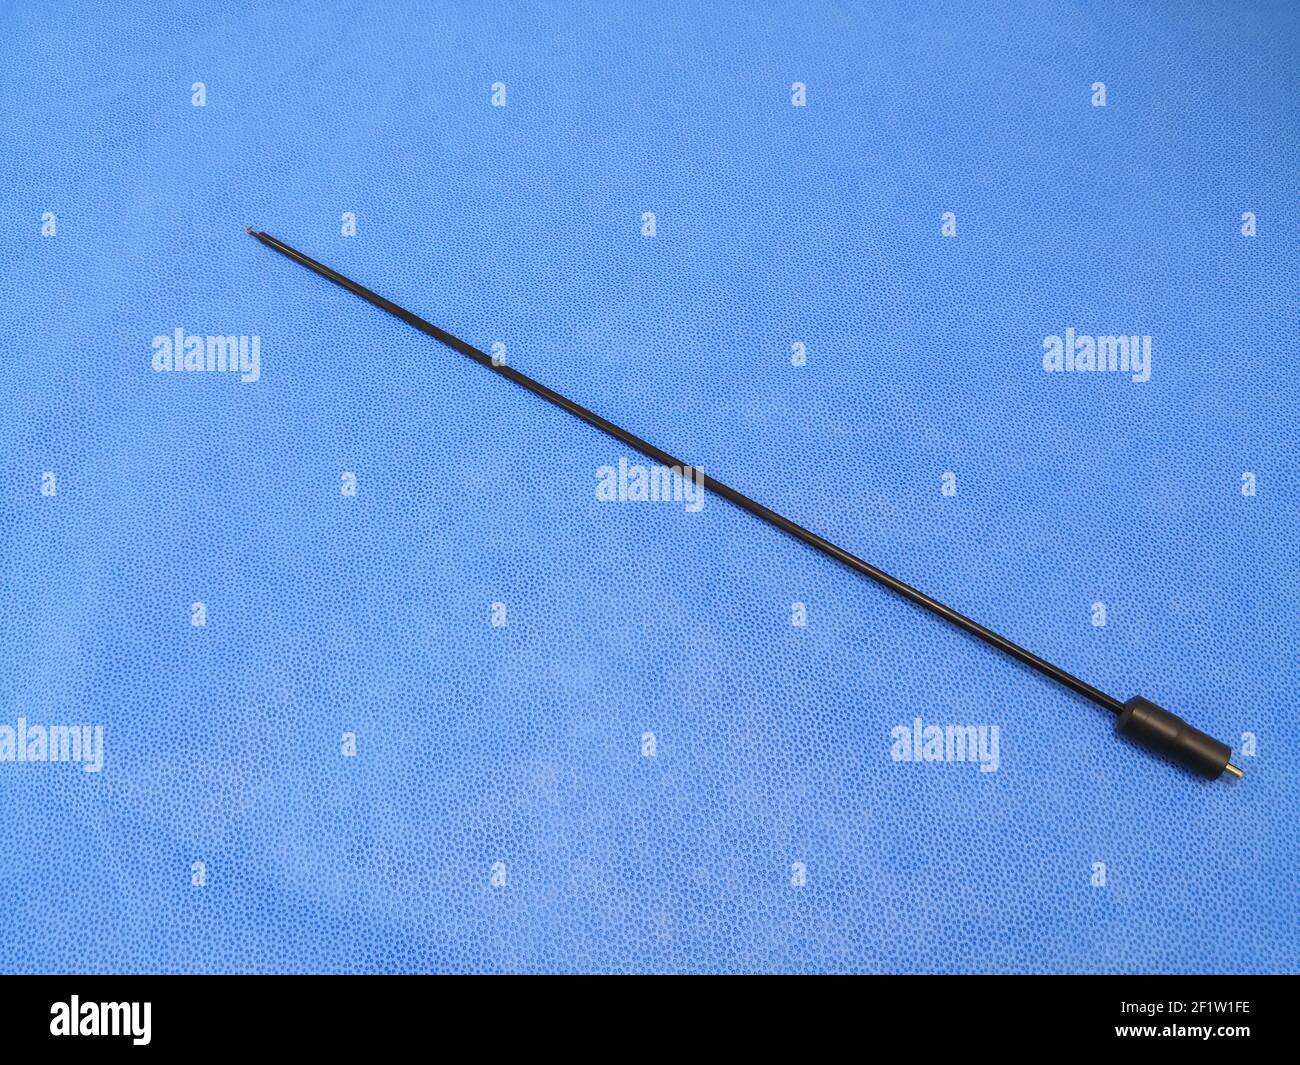 Immagine closeup delle pinzette a gancio laparoscopiche chirurgiche mediche Foto Stock